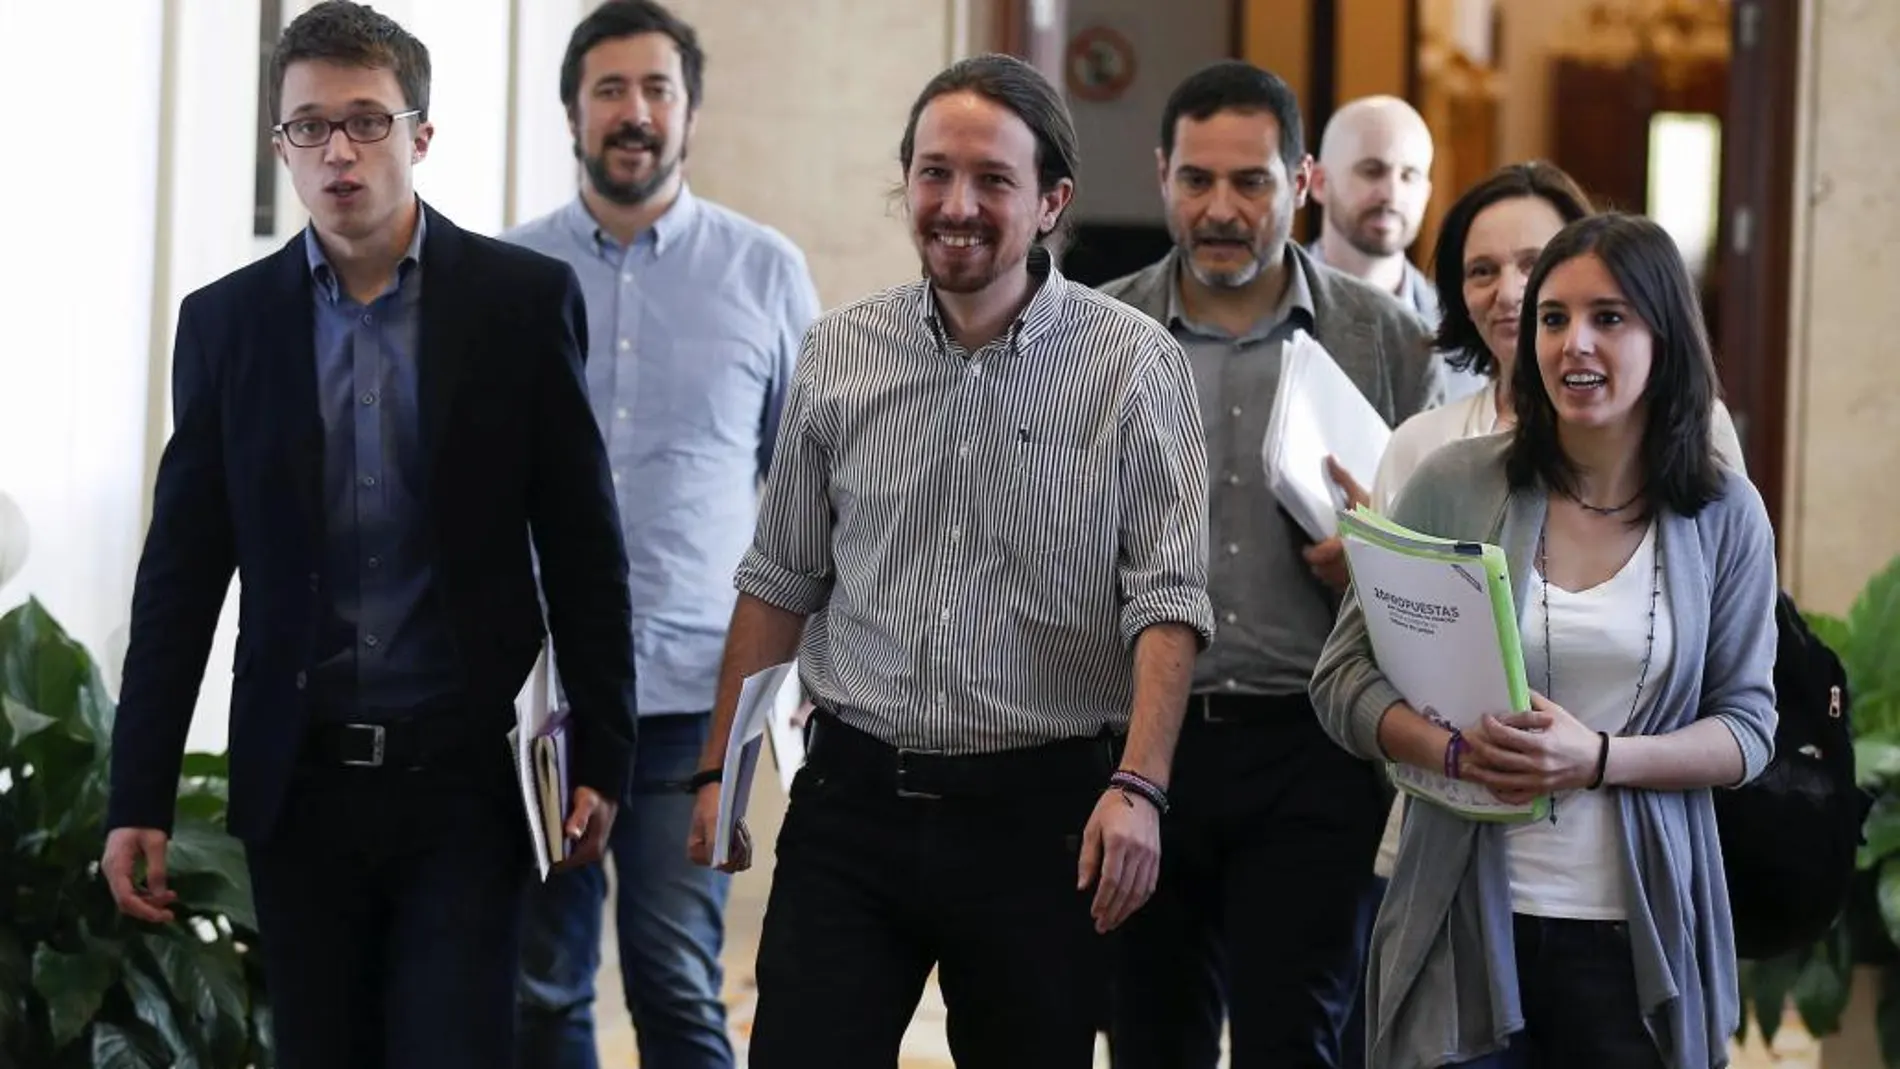 El equipo negociador de Podemos.